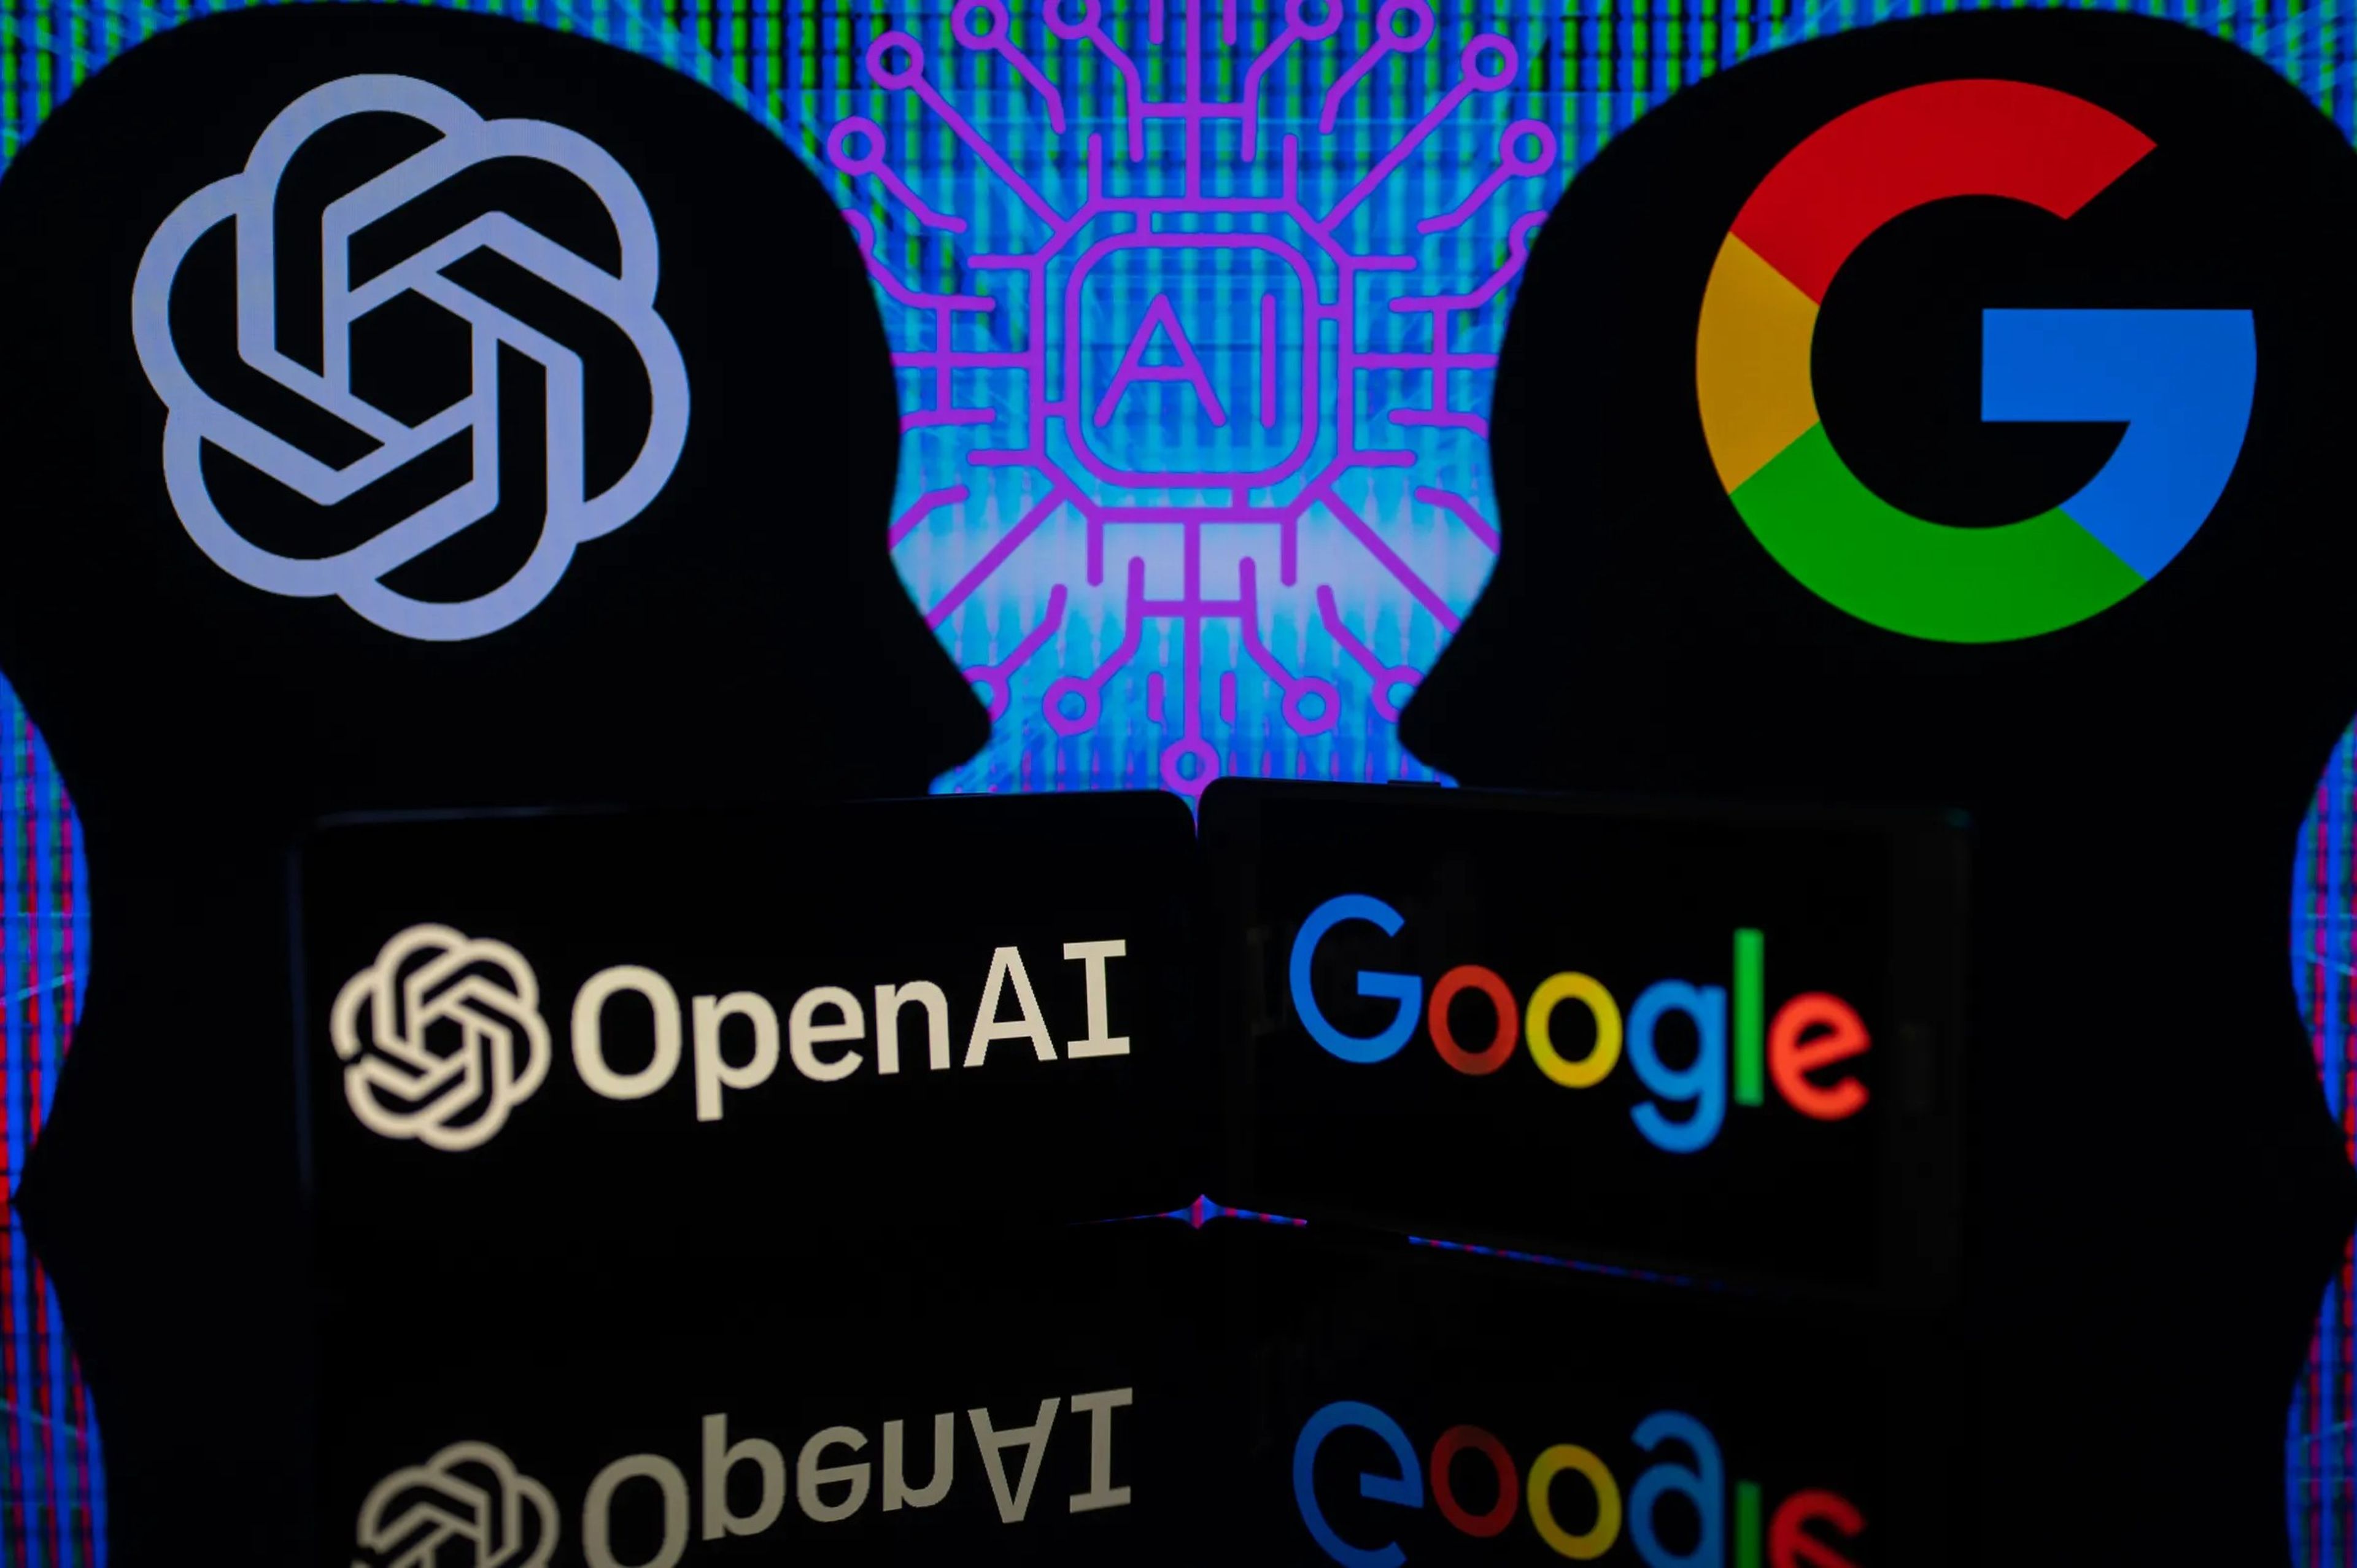 Ilustración de la rivalidad entre OpenAI y Google en materia de inteligencia artificial